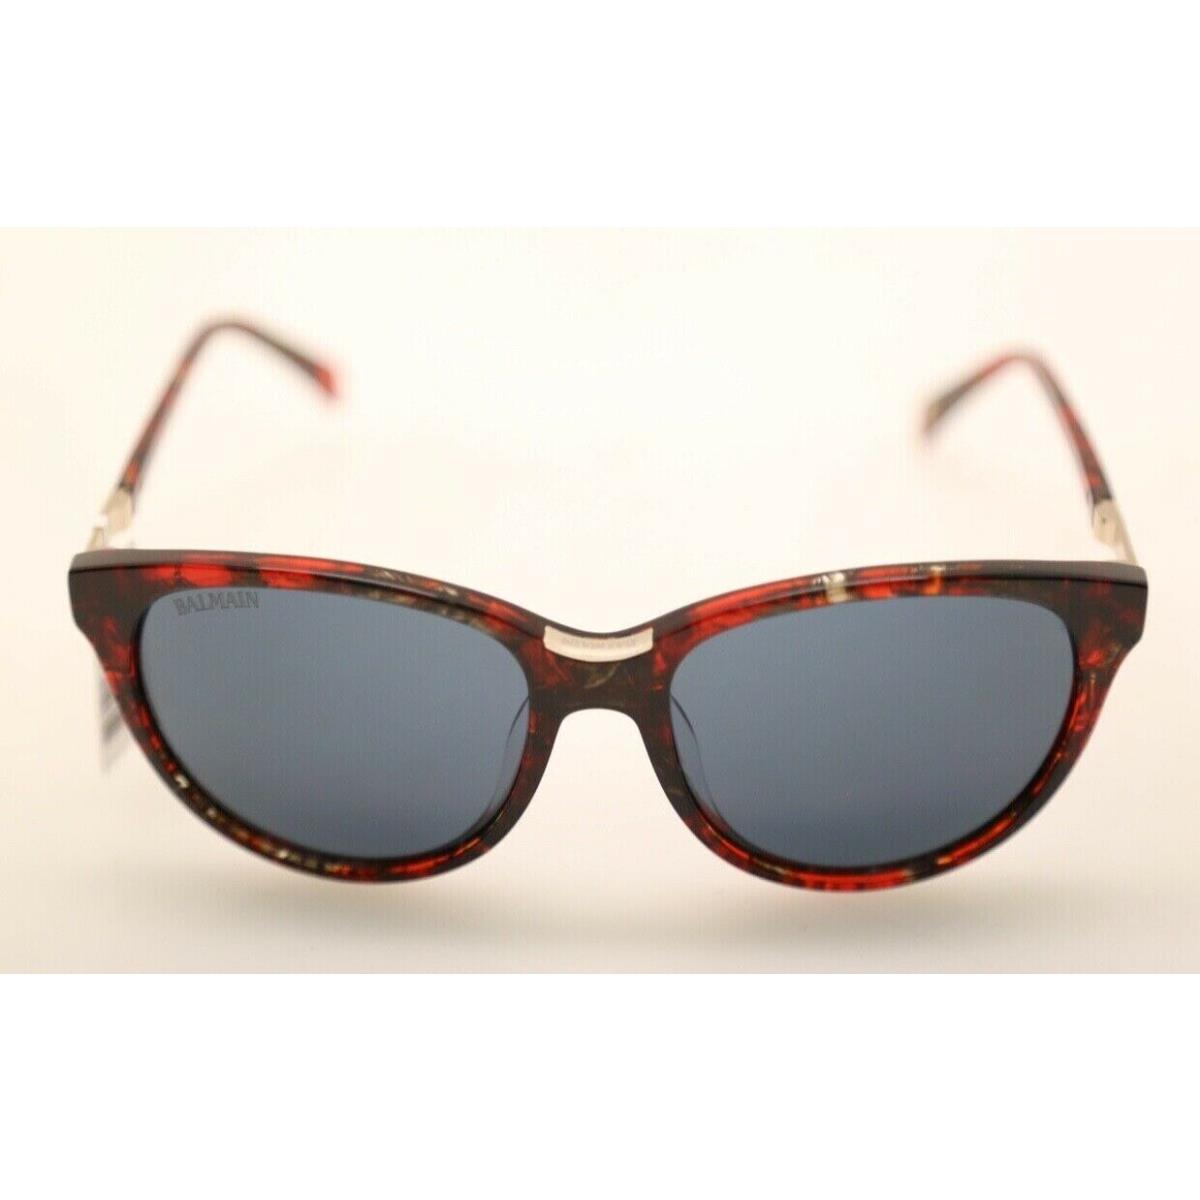 Balmain BL2100 C02 Red Tortoise w/ Grey Lenses 54mm Sunglasses 679